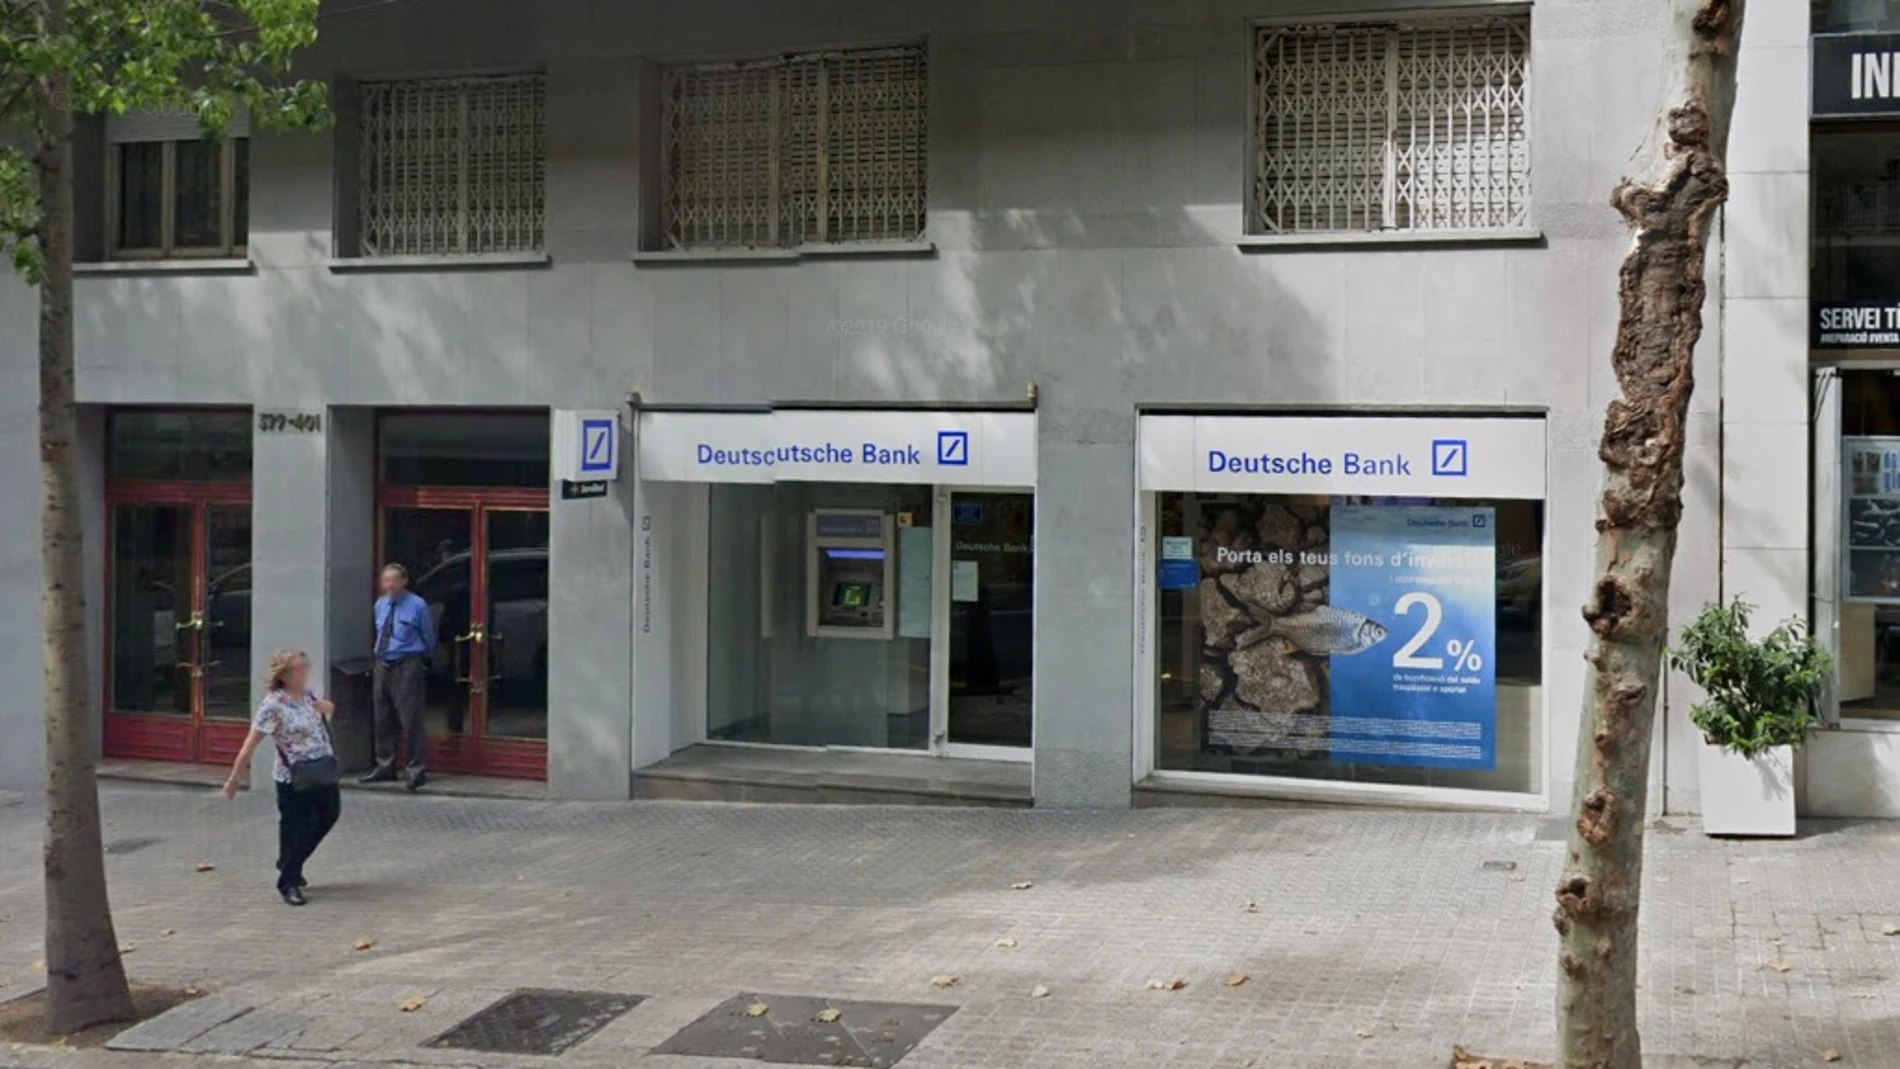 Sucursal del banco Deutsche Bank, en la Calle Balmes (Barcelona), donde ocurrió el robo